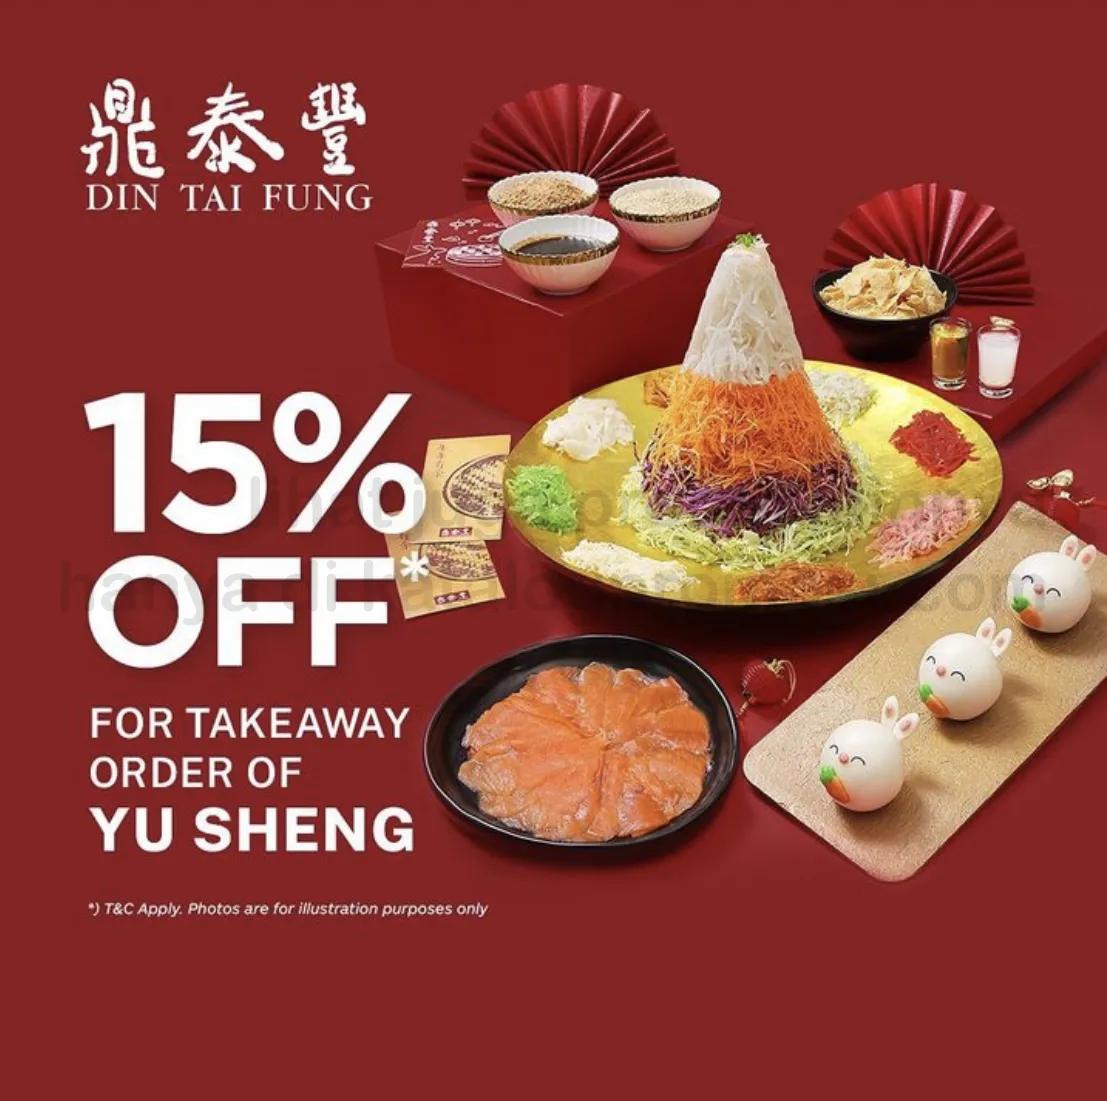 Promo DIN TAI FUNG Early Bird Prosperity Yu Sheng - Discount hingga 15% berlaku untuk pemesanan sd. tanggal 29 Januari 2023